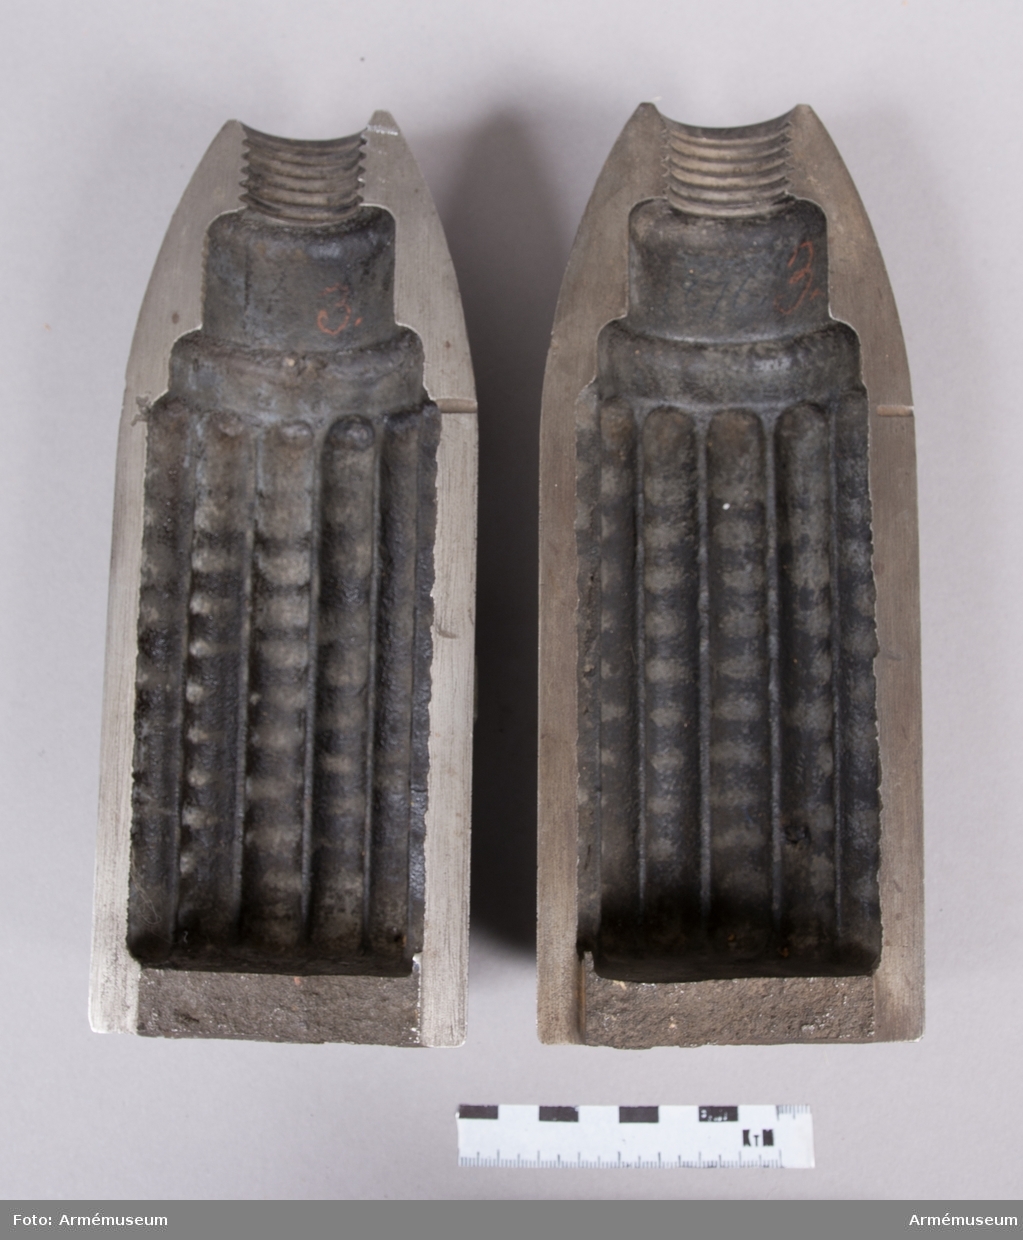 Grupp F II.
9 cm granatkartesch i två halvor. För 250 stycken blykulor till 9 cm (3") försökskanon. Enligt ritning den 27/6 1876.
1875-76 års skjutförsök.